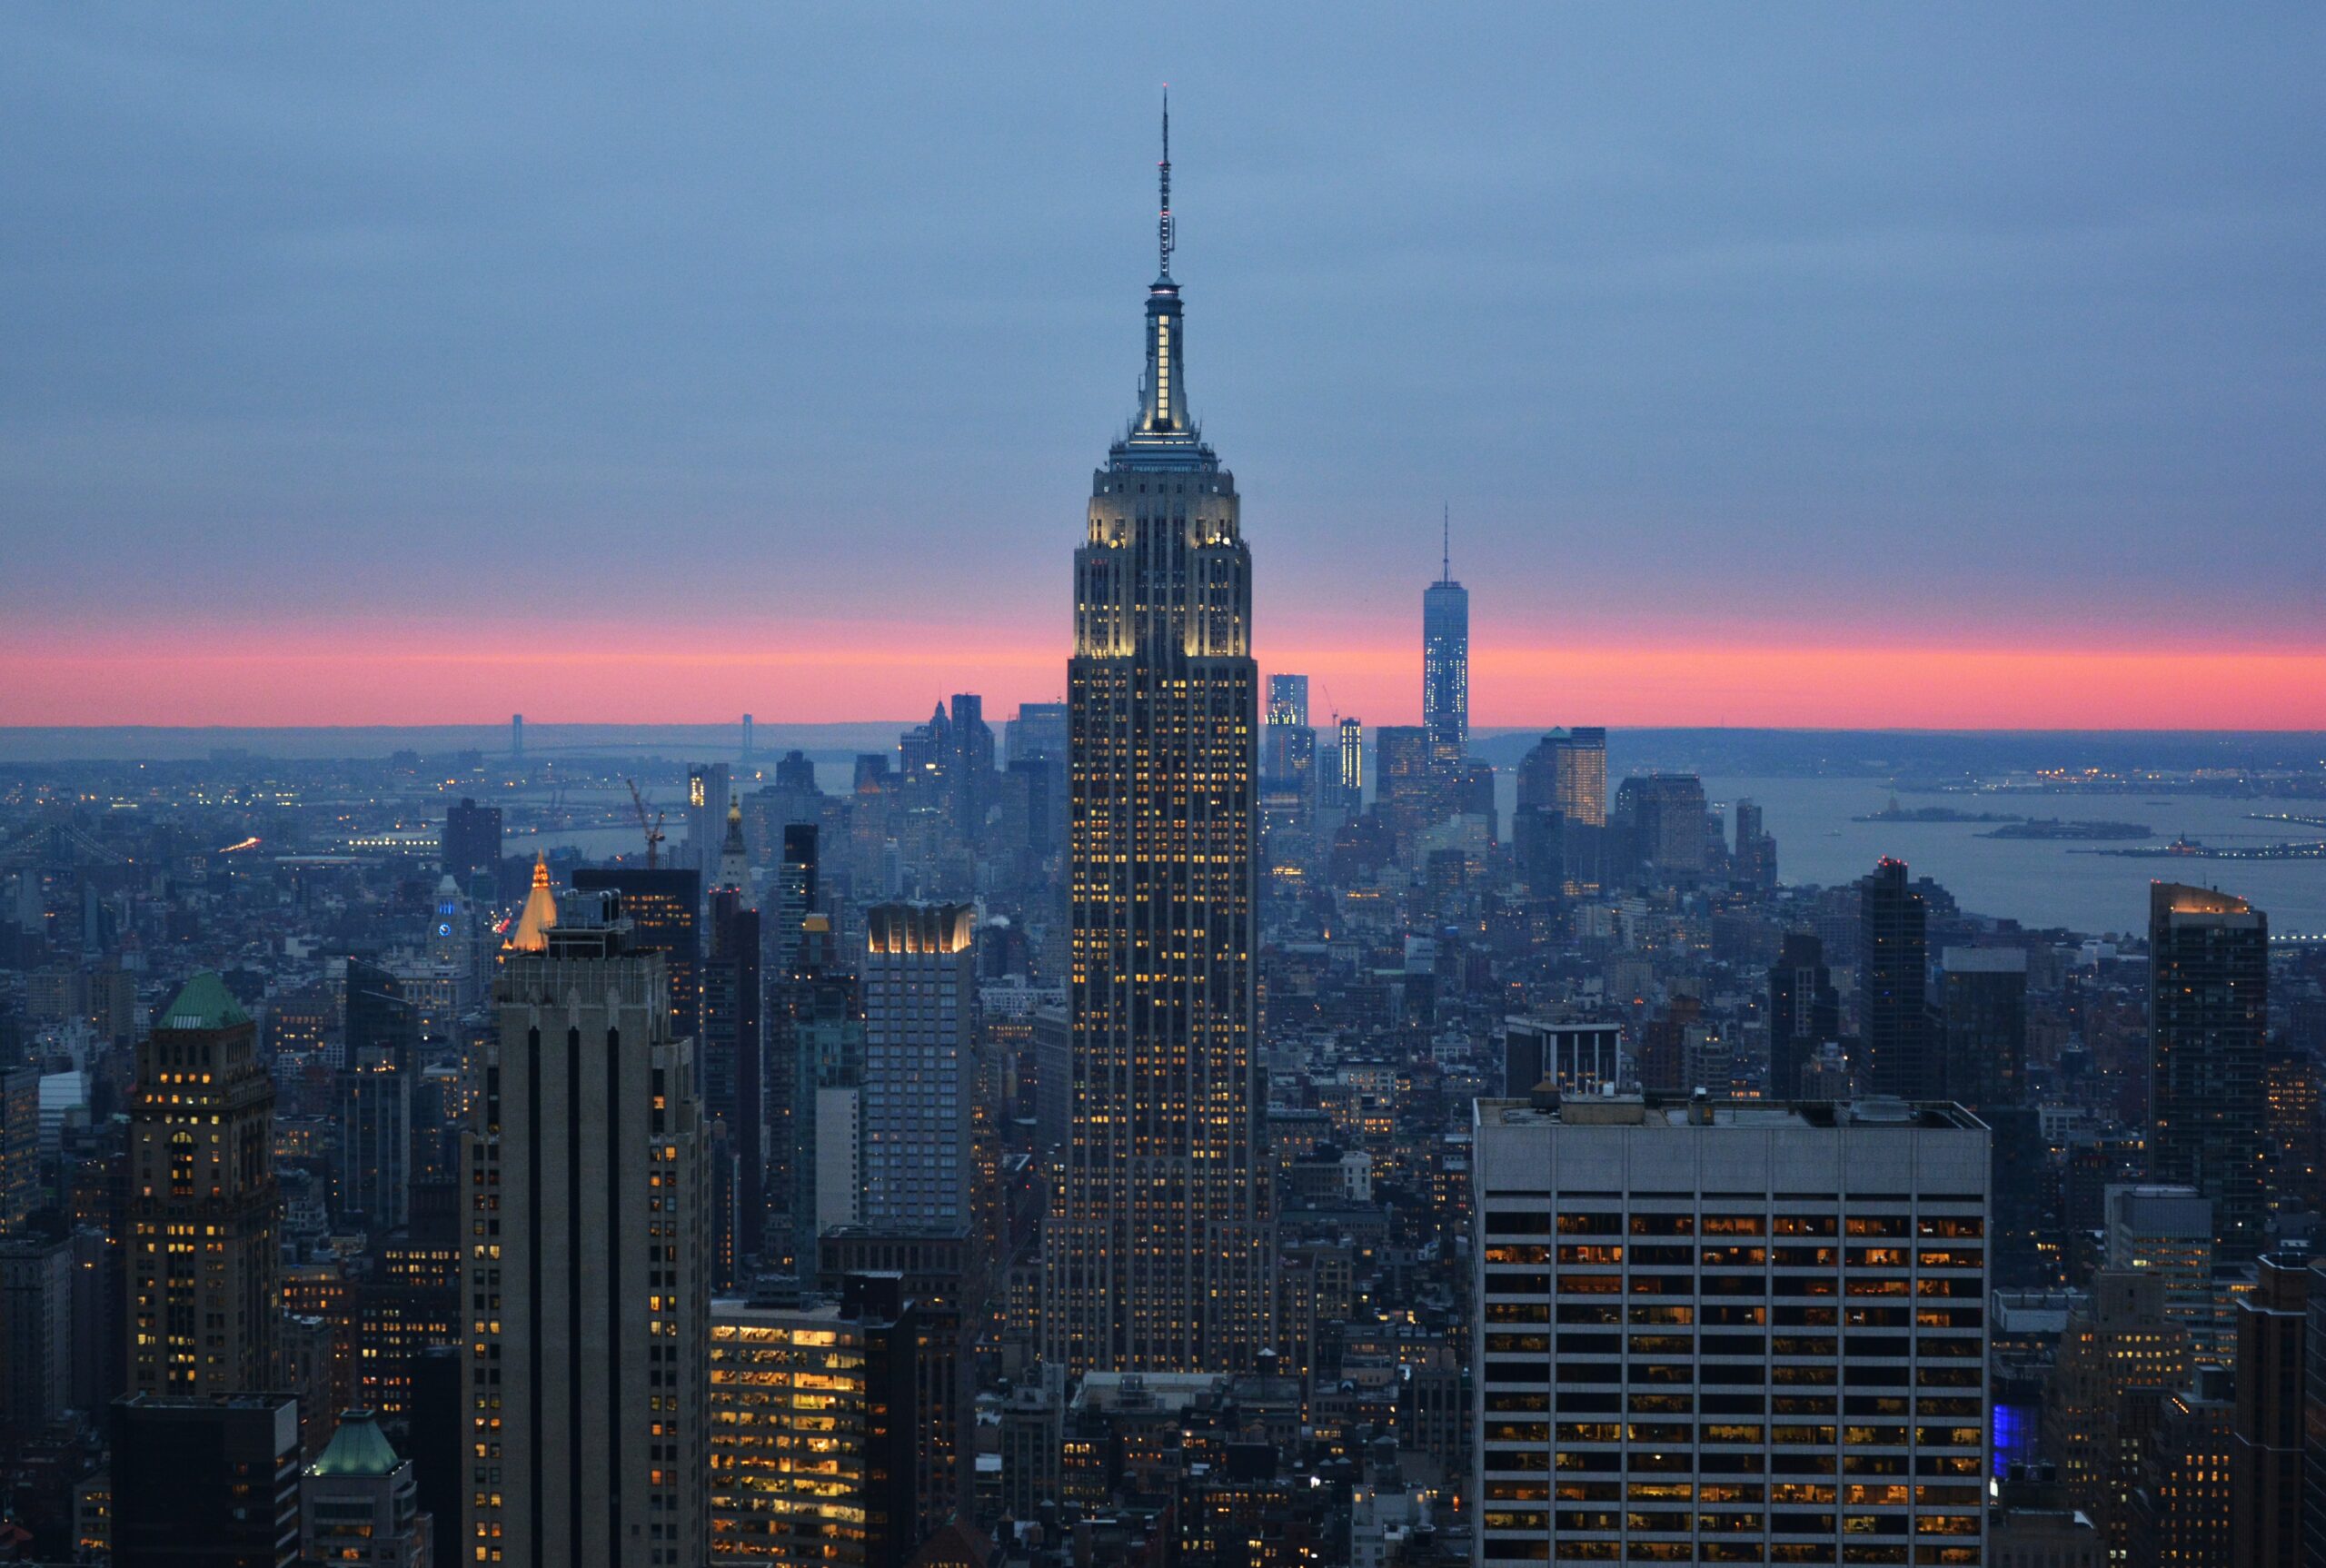 Vista panorámica del horizonte de la ciudad de Nueva York al atardecer. El Empire State Building se destaca en el centro, iluminado contra el cielo de tonos rosados y azules. A su alrededor, se ven numerosos rascacielos con luces encendidas, bajo un cielo que cambia de azul a naranja y rosa, reflejando el atardecer sobre la ciudad y el río al fondo.